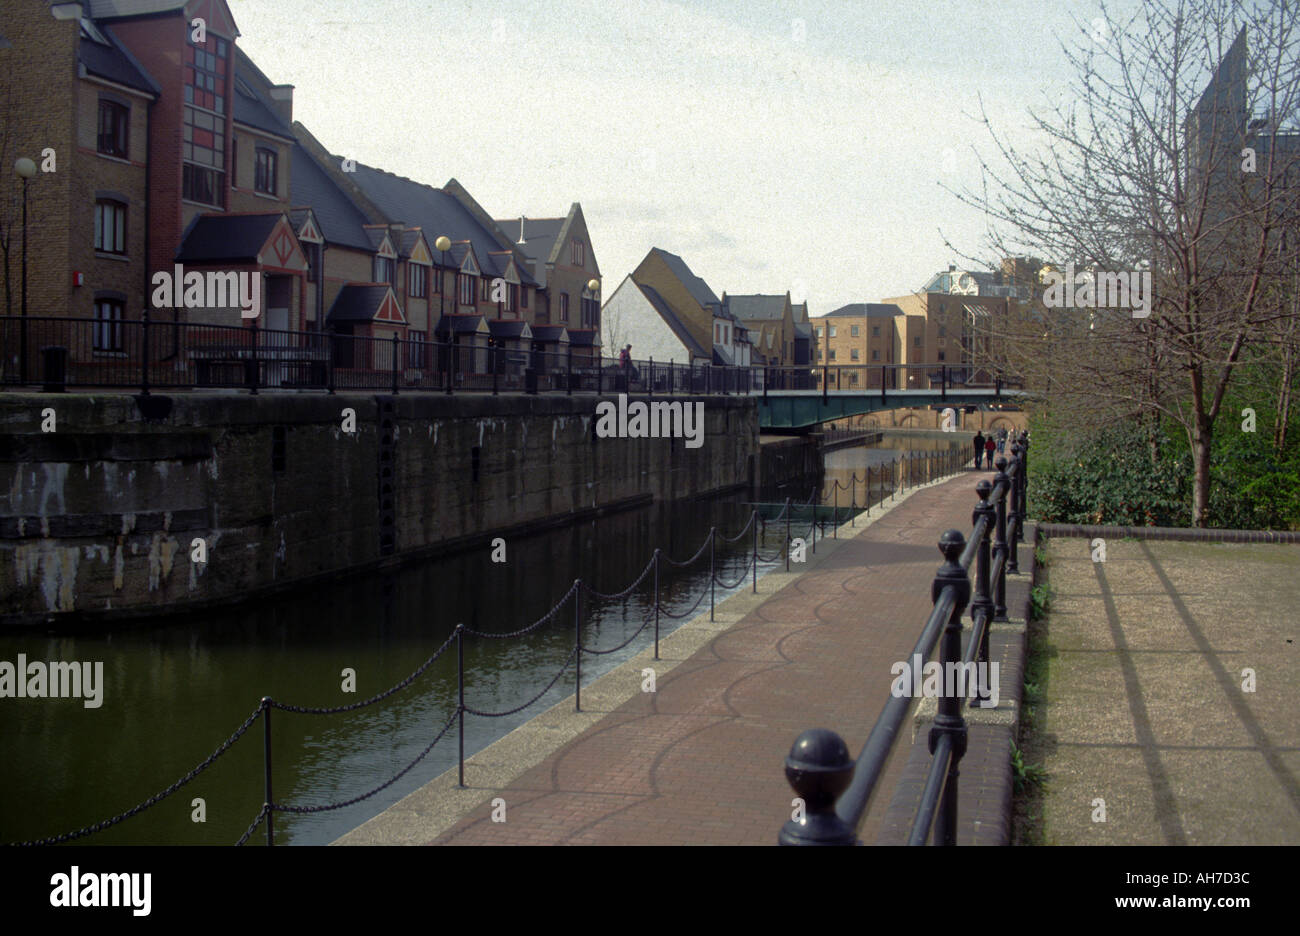 Développement de nouveaux logements Wapping Docklands de Londres Angleterre circa 1994 Banque D'Images